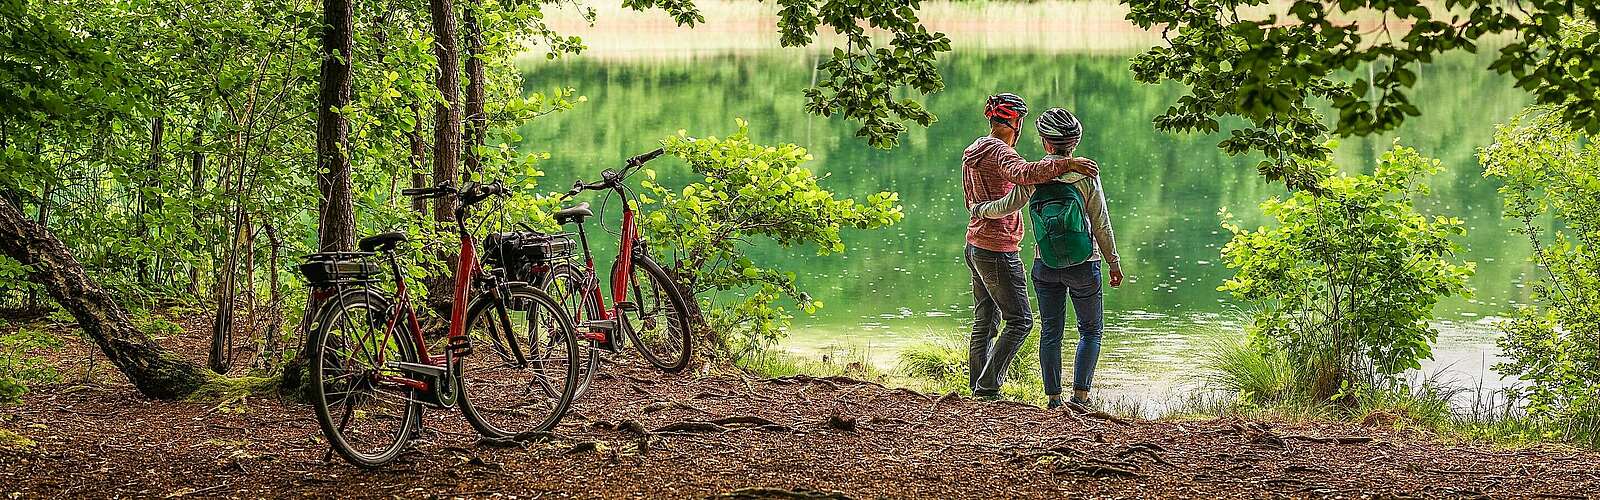 Radfahrer machen Pause und schauen auf den Trünnensee,
        
    

        Foto: Fotograf / Lizenz - Media Import/Markus Tiemann